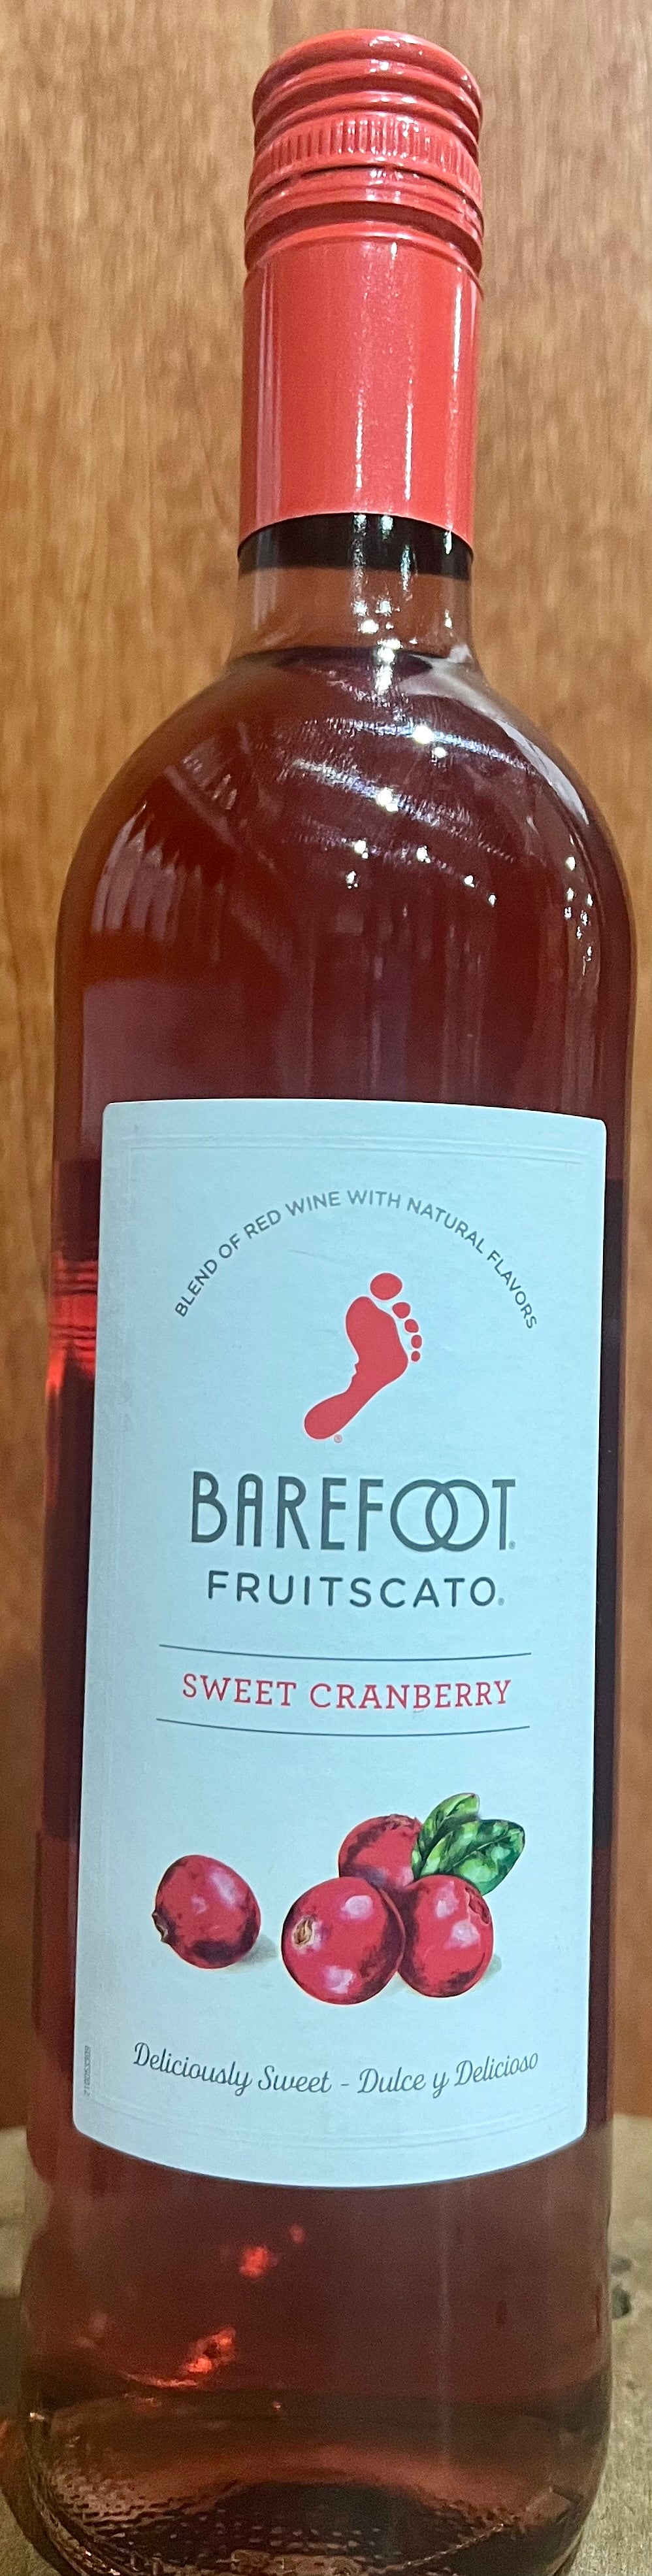 Barefoot Fruitscato Sweet Cranberry